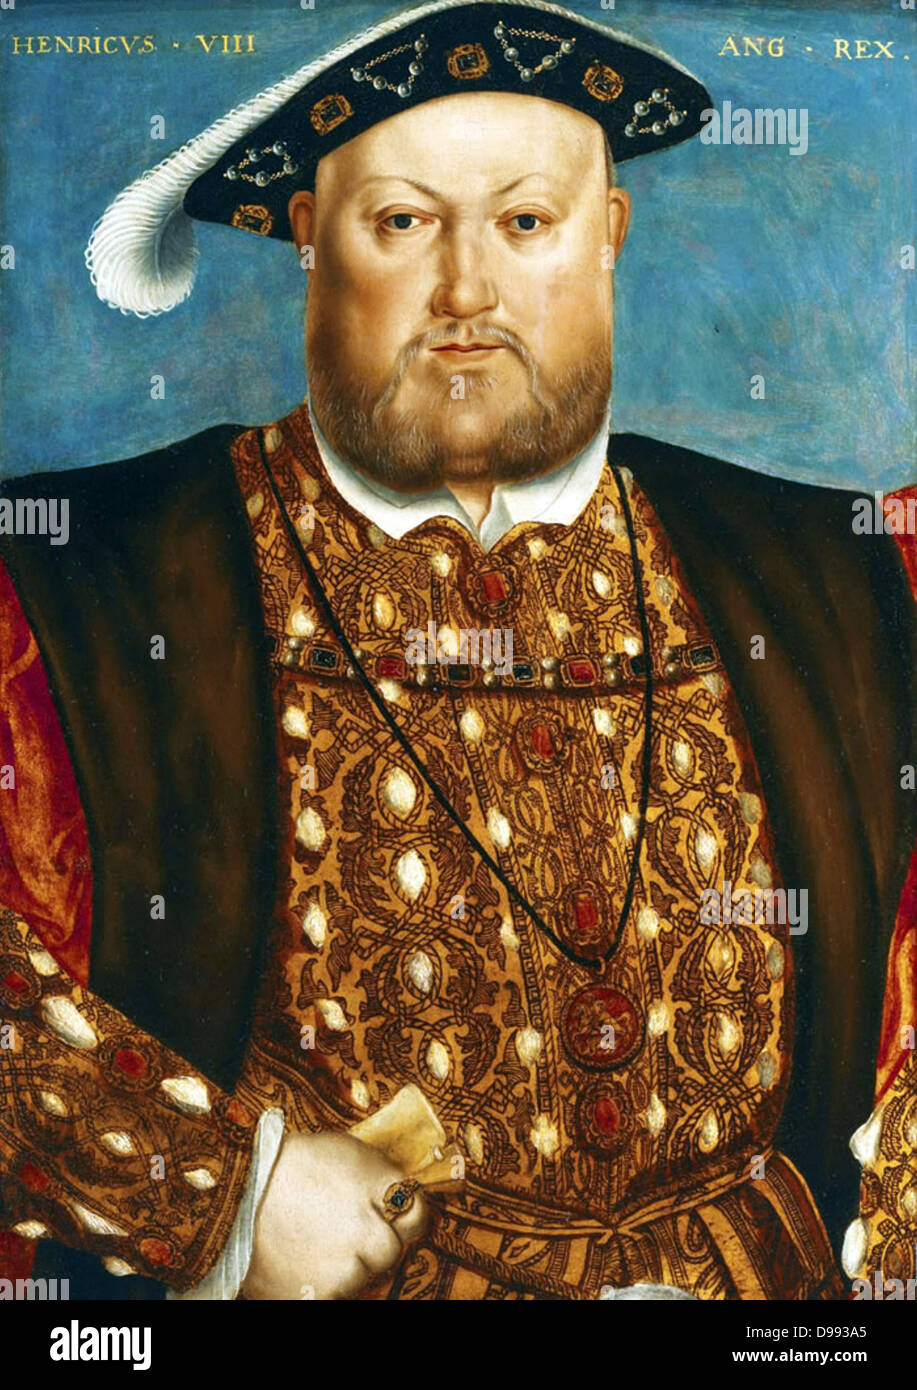 Portrait von Henry VIII. Von Hans Holbein Datum C. 1540. Henry VIII (28. Juni 1491 - 28. Januar 1547), war König von England ab 21. April 1509 bis zu seinem Tod. Er war auch Herr von Irland (später König von Irland) und Antragsteller dem Königreich Frankreich. Henry war t Stockfoto